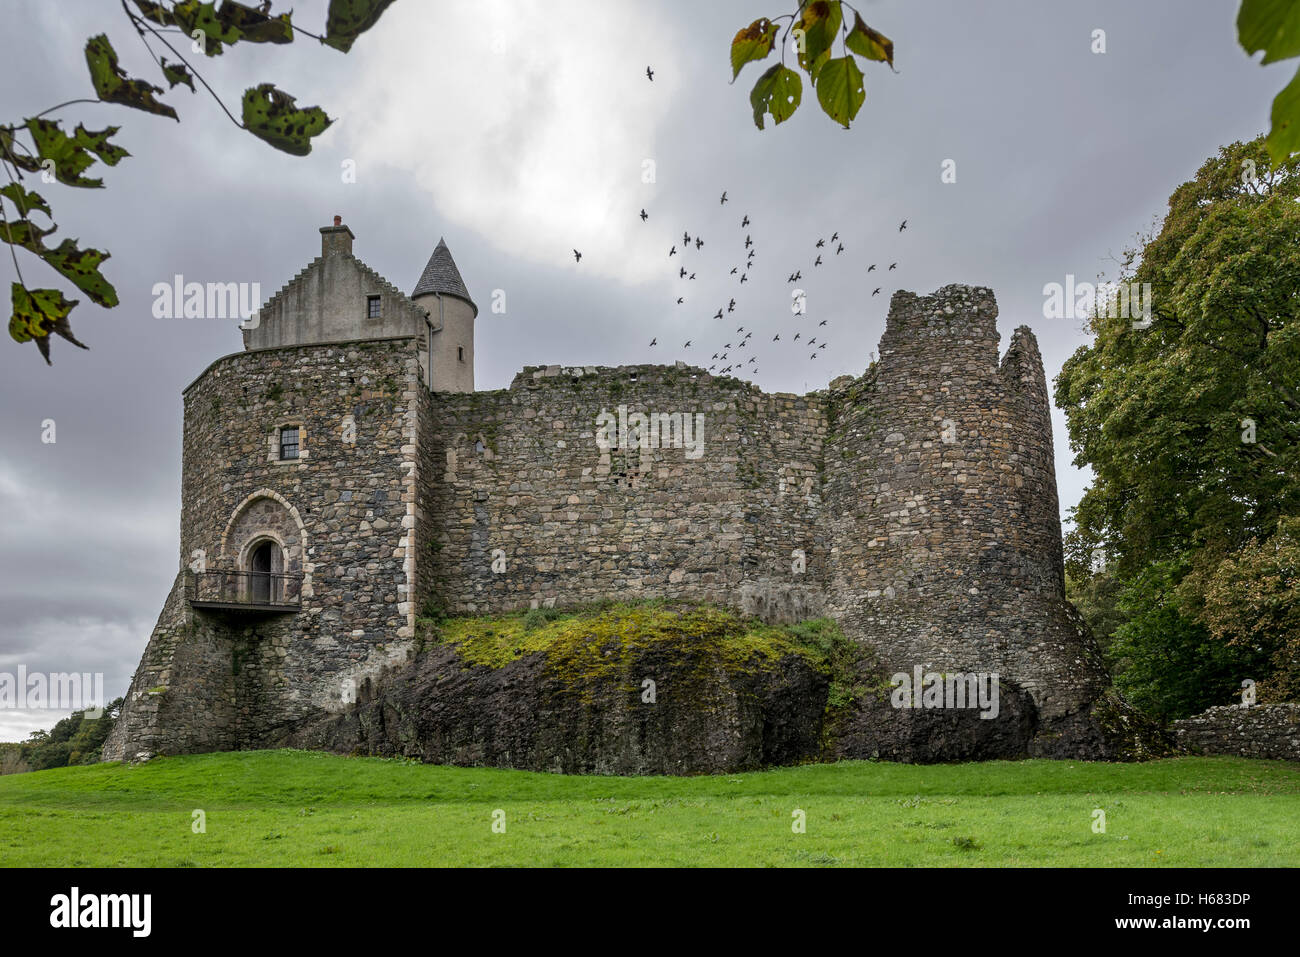 Dunstaffnage château construit par les seigneurs de Lorn MacDougall Argyll et Bute, Western Highlands, Ecosse Banque D'Images